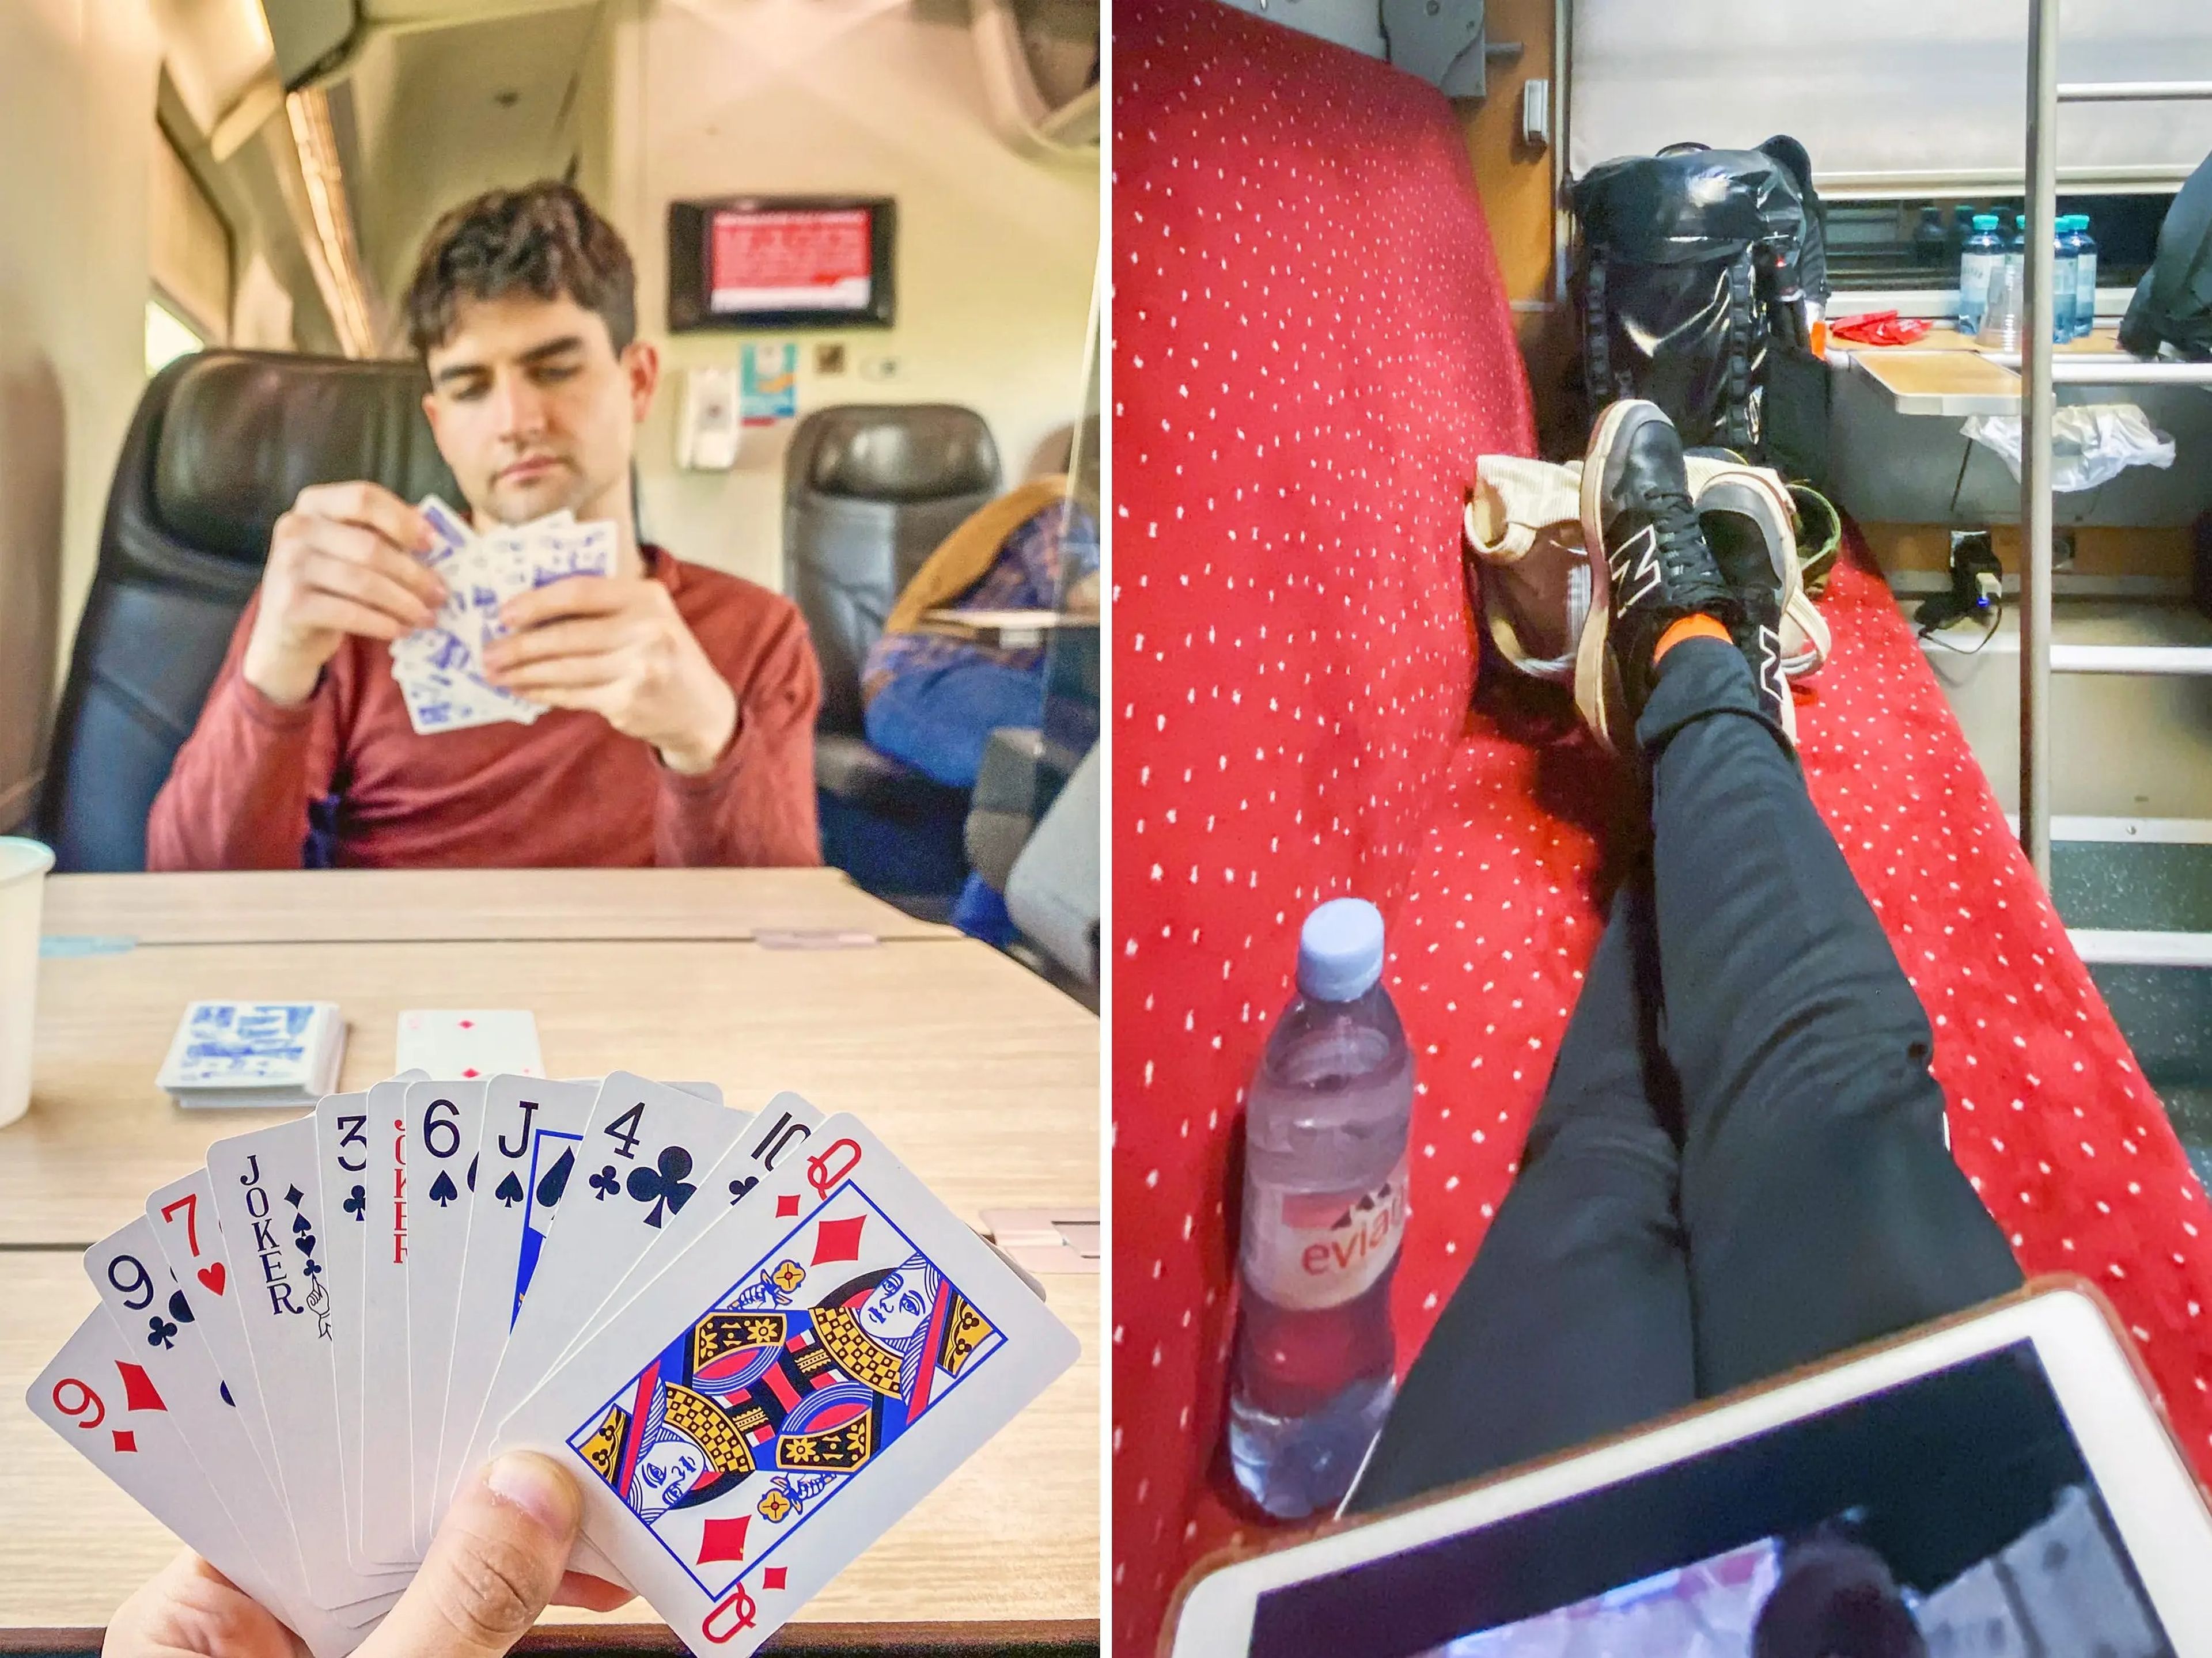 La autora juega a las cartas con su pareja en un tren en Italia (izda.) y utiliza su iPad en un tren en Viena (dcha.).